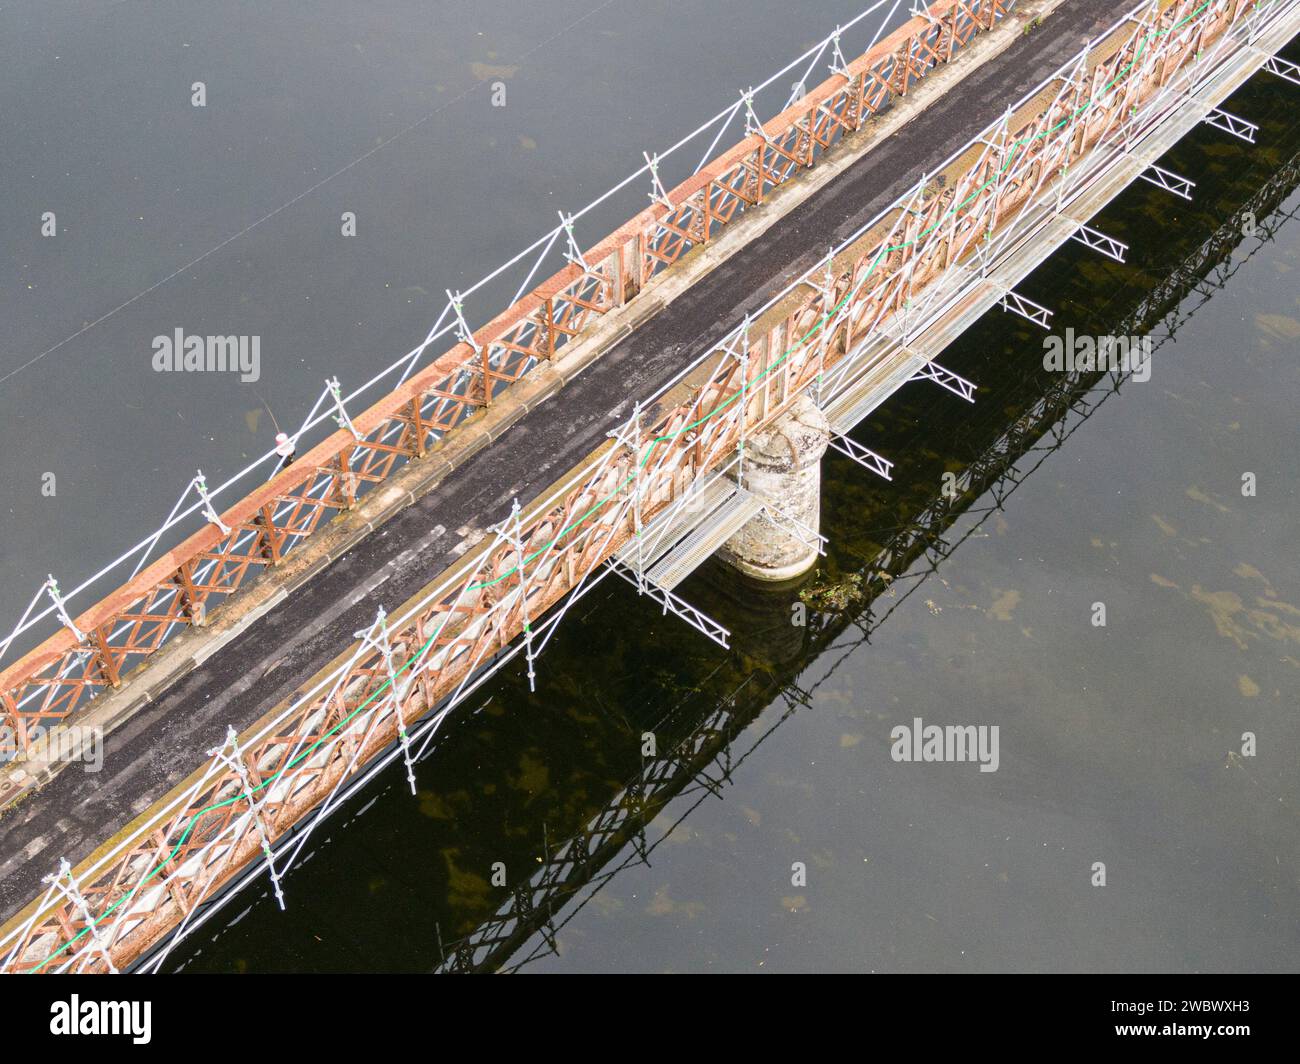 Gerüste, die für Wartungs- oder Restaurierungsarbeiten an einer kleinen Brücke über einen großen Fluss Cher verwendet werden Stockfoto